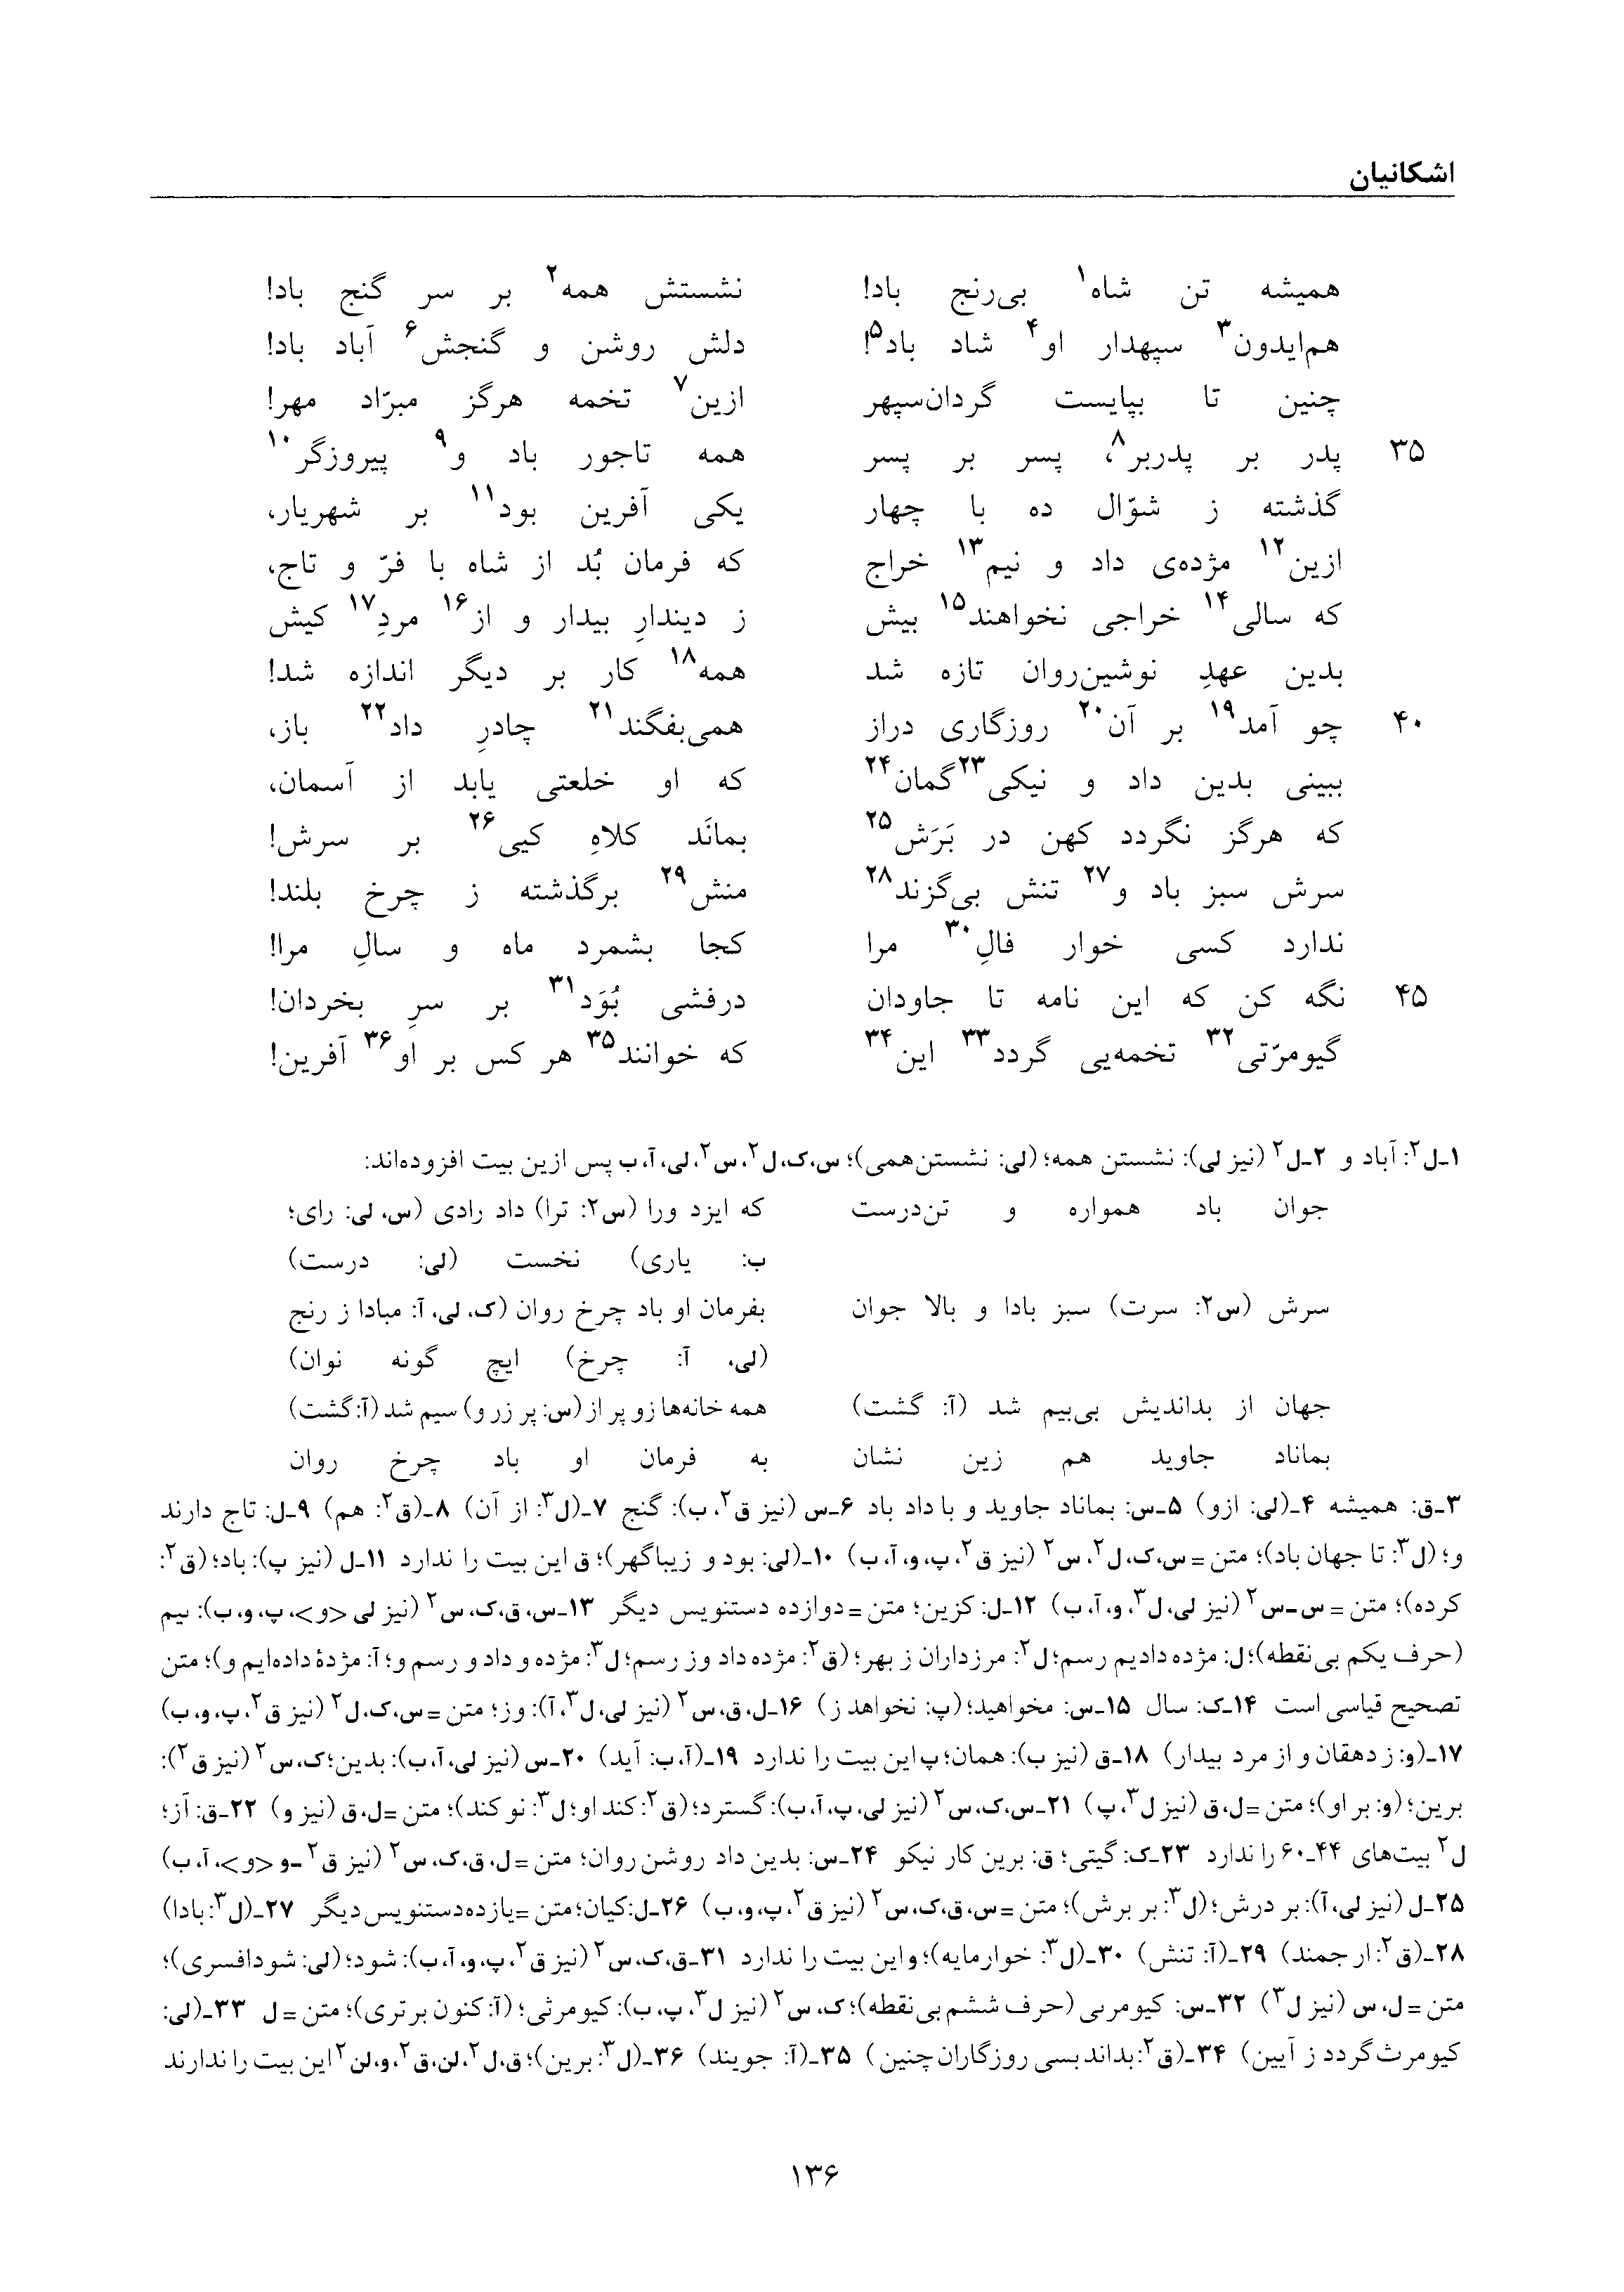 vol. 6, p. 136